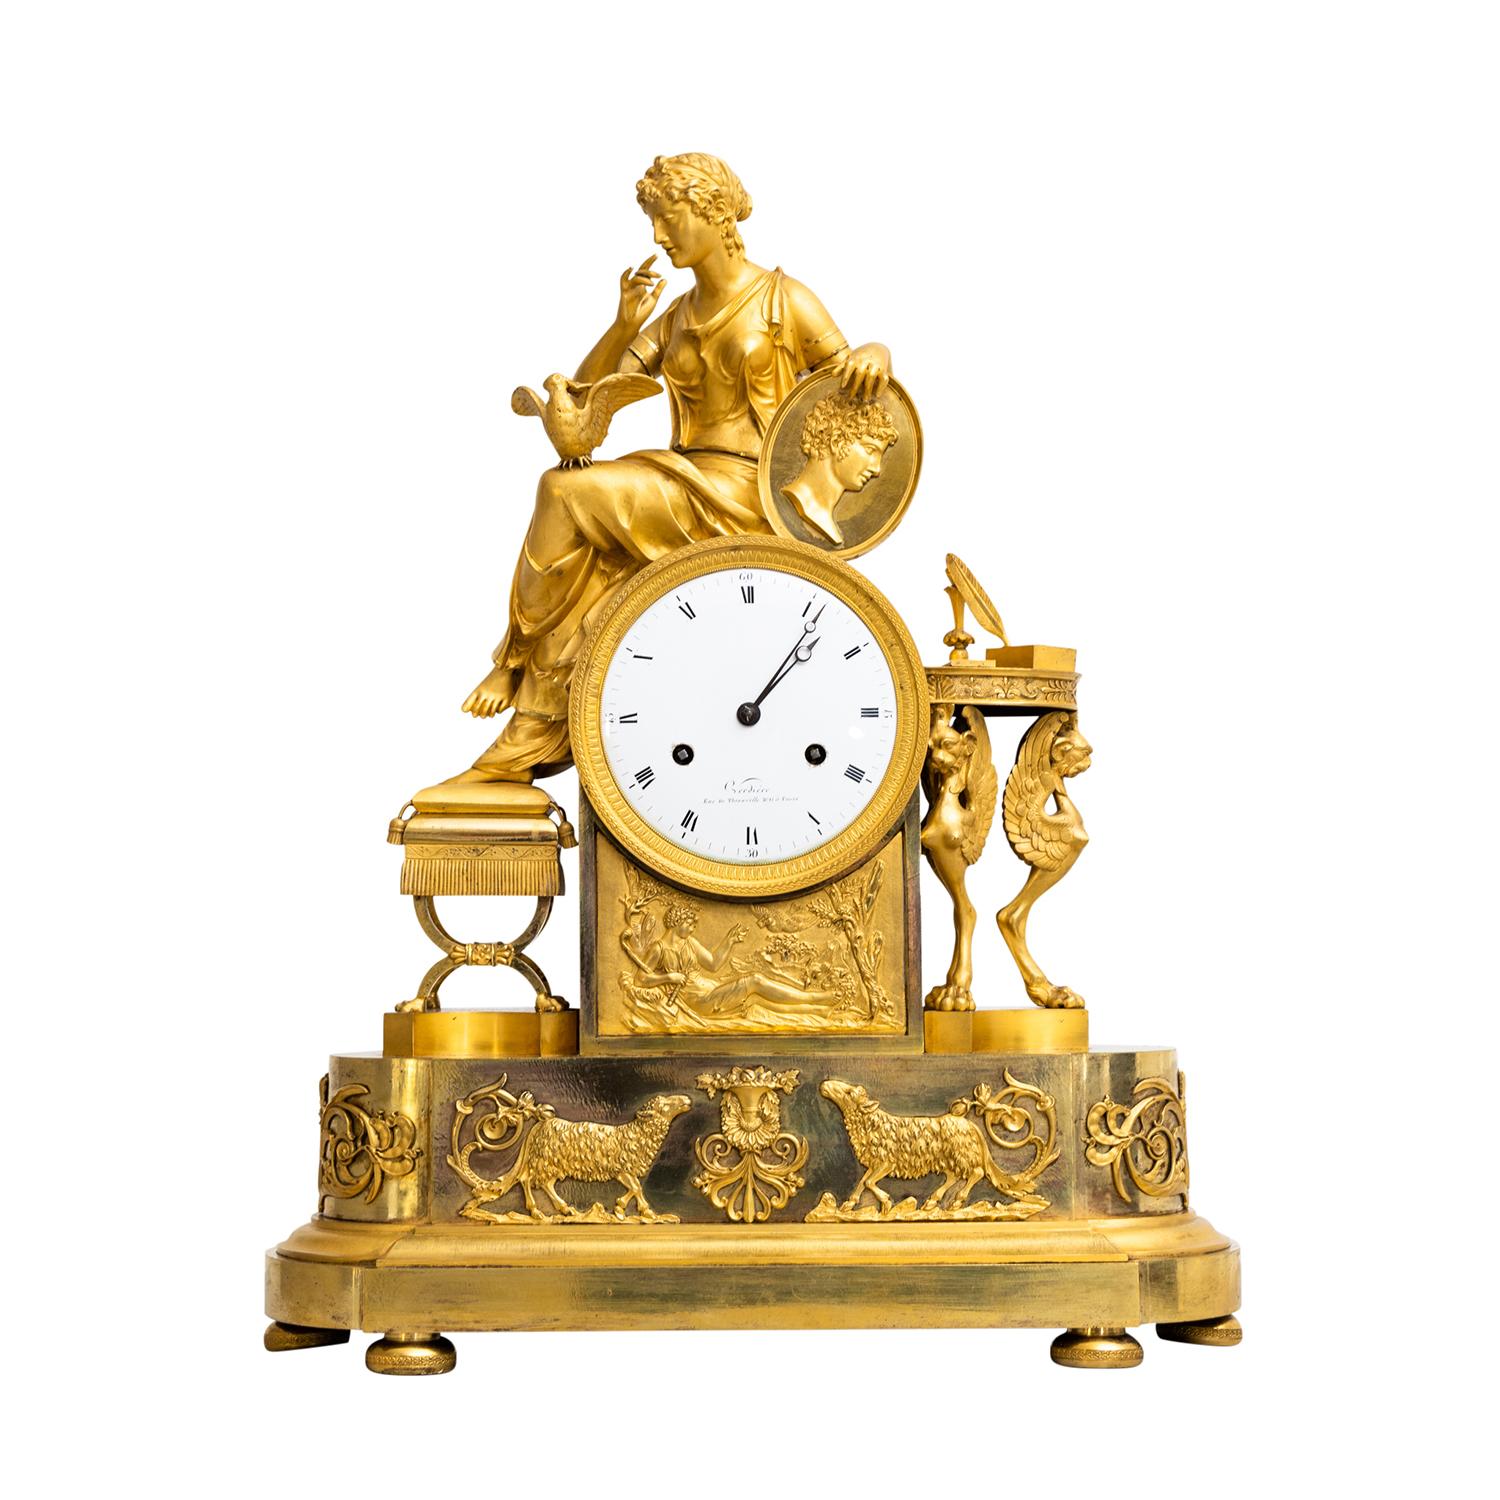 Pendule de table française ancienne en or, pendule en bronze doré à la main, en bon état. Le cadran circulaire en émail de la pendule parisienne est détaillé avec des chiffres romains et des index arabes des quarts sur fond blanc, particularisés par